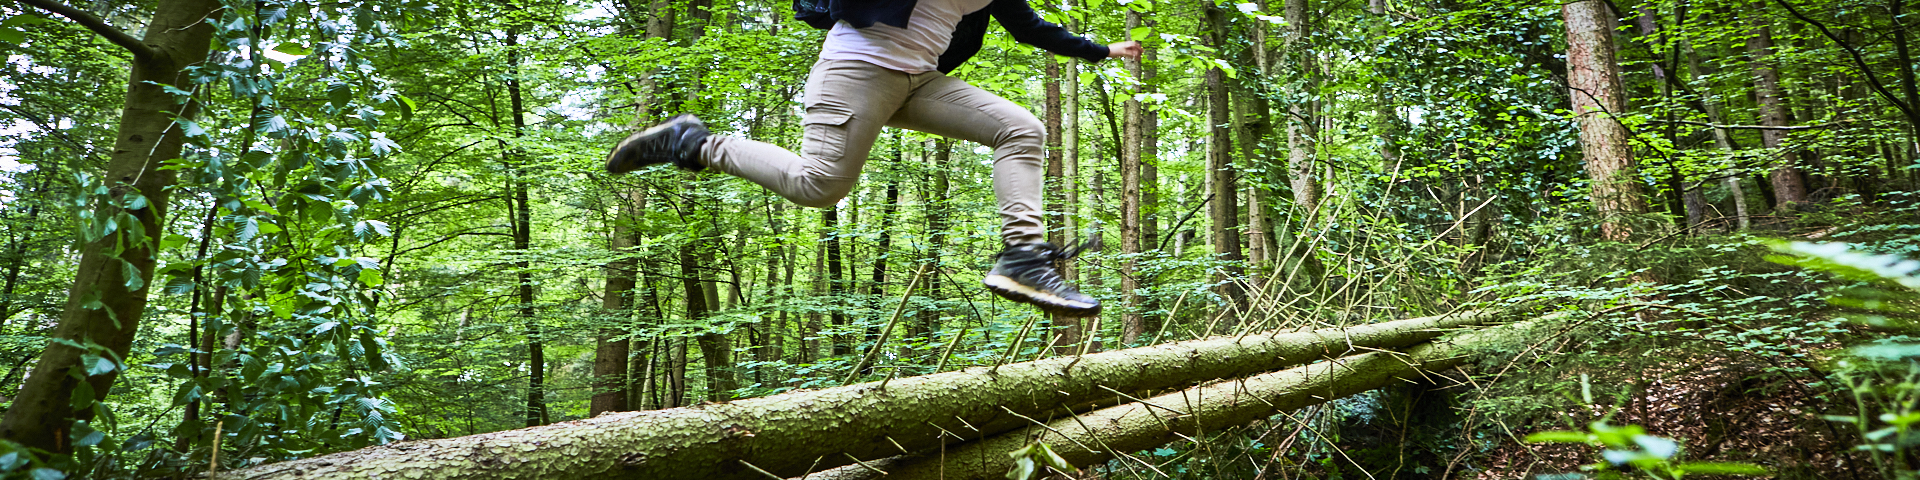  Symbolbild: In einem Wald springt jemand über zwei querliegende Baumstämme und symbolisiert so den "Sprung in eine Anstellung" bei der Stadt Wertheim. 